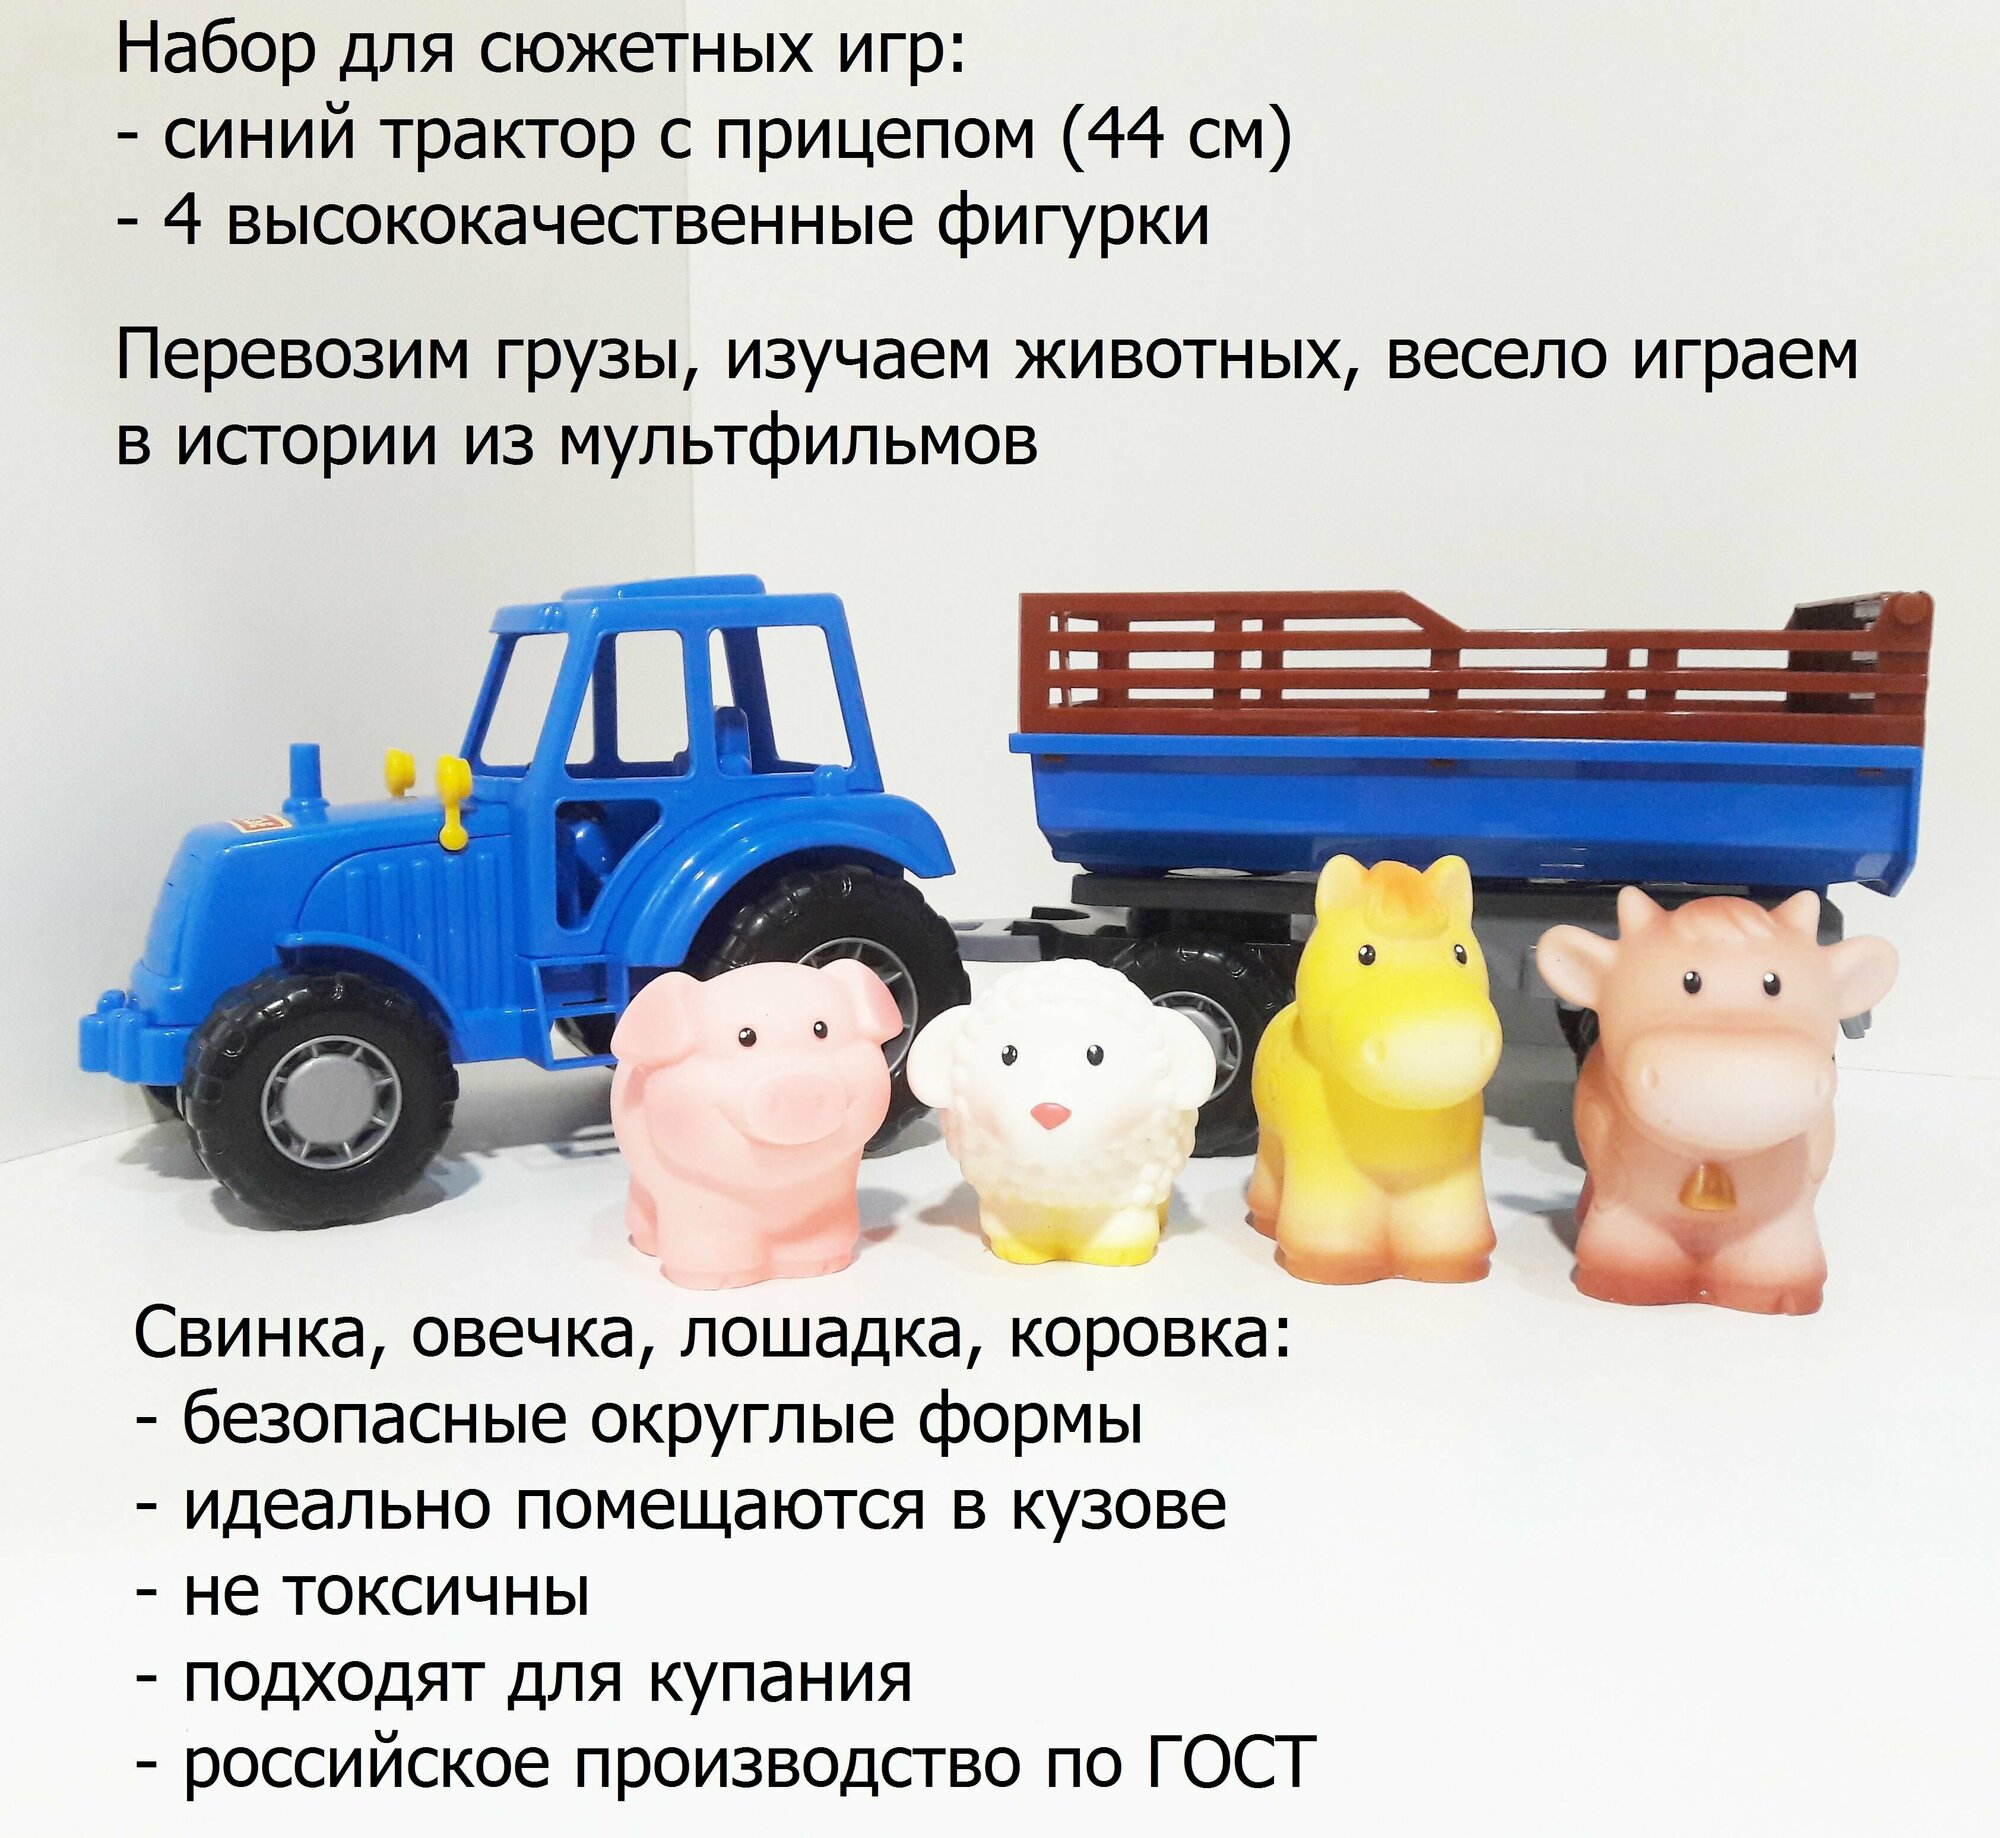 Фигурки 4-х домашних животных и синий трактор с прицепом 44 см для игры в их перевозку